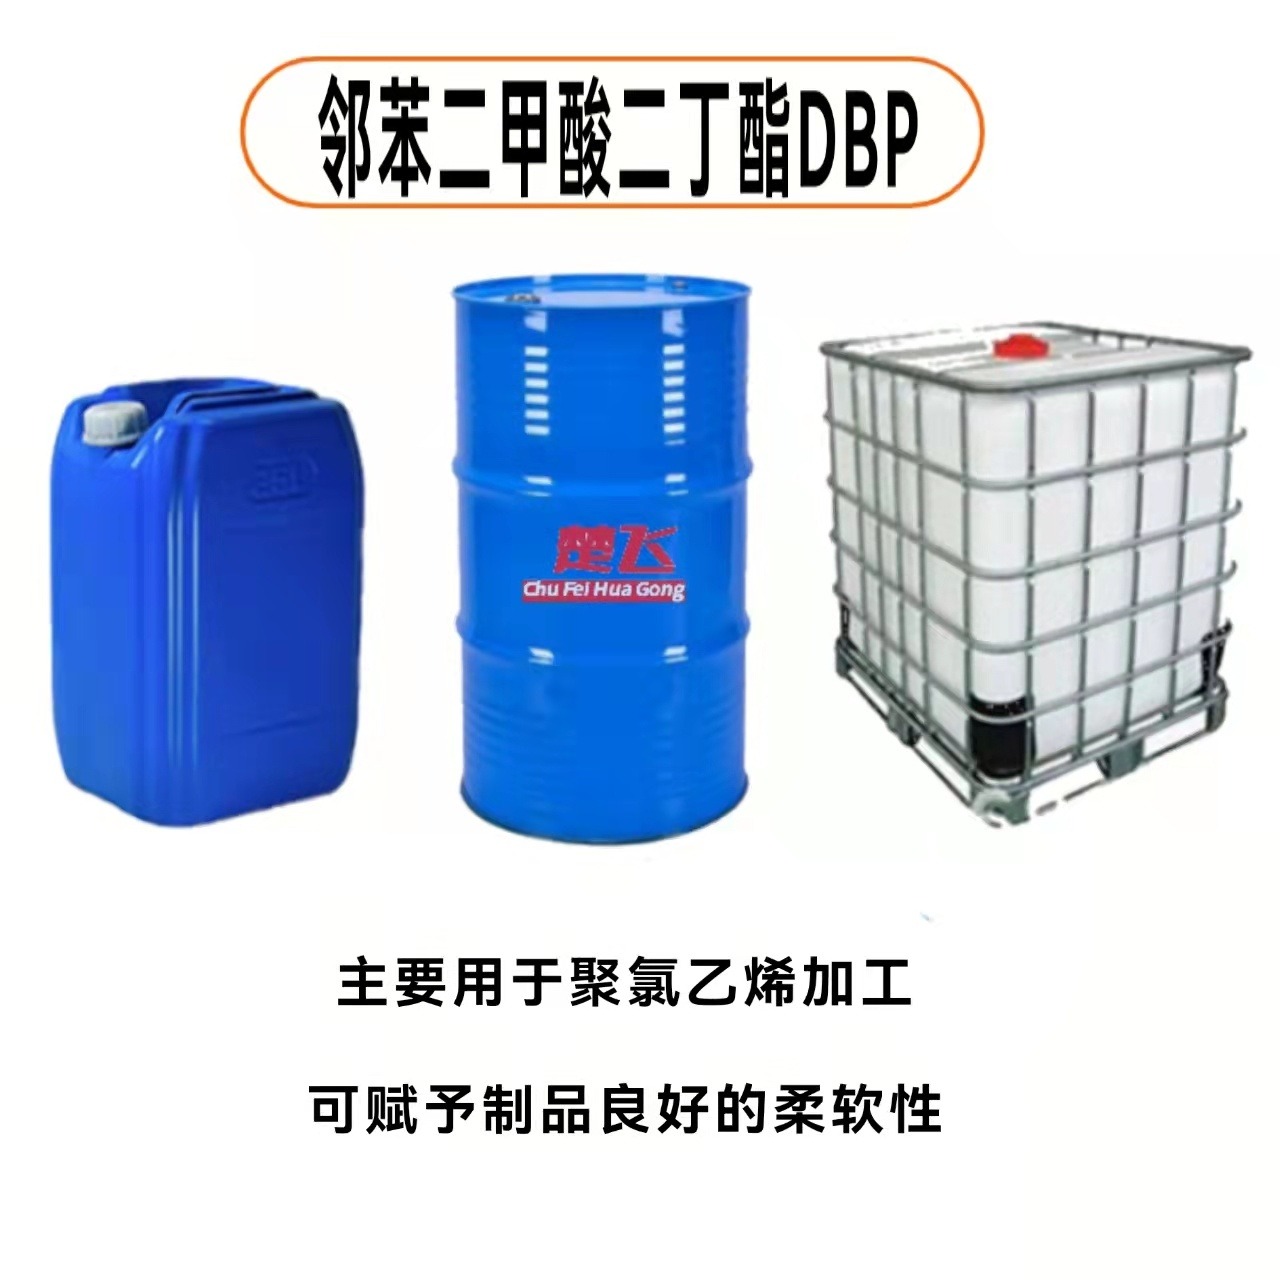 广州楚飞 现货供应 PVC增塑剂 二丁酯 DBP 通用型增塑剂